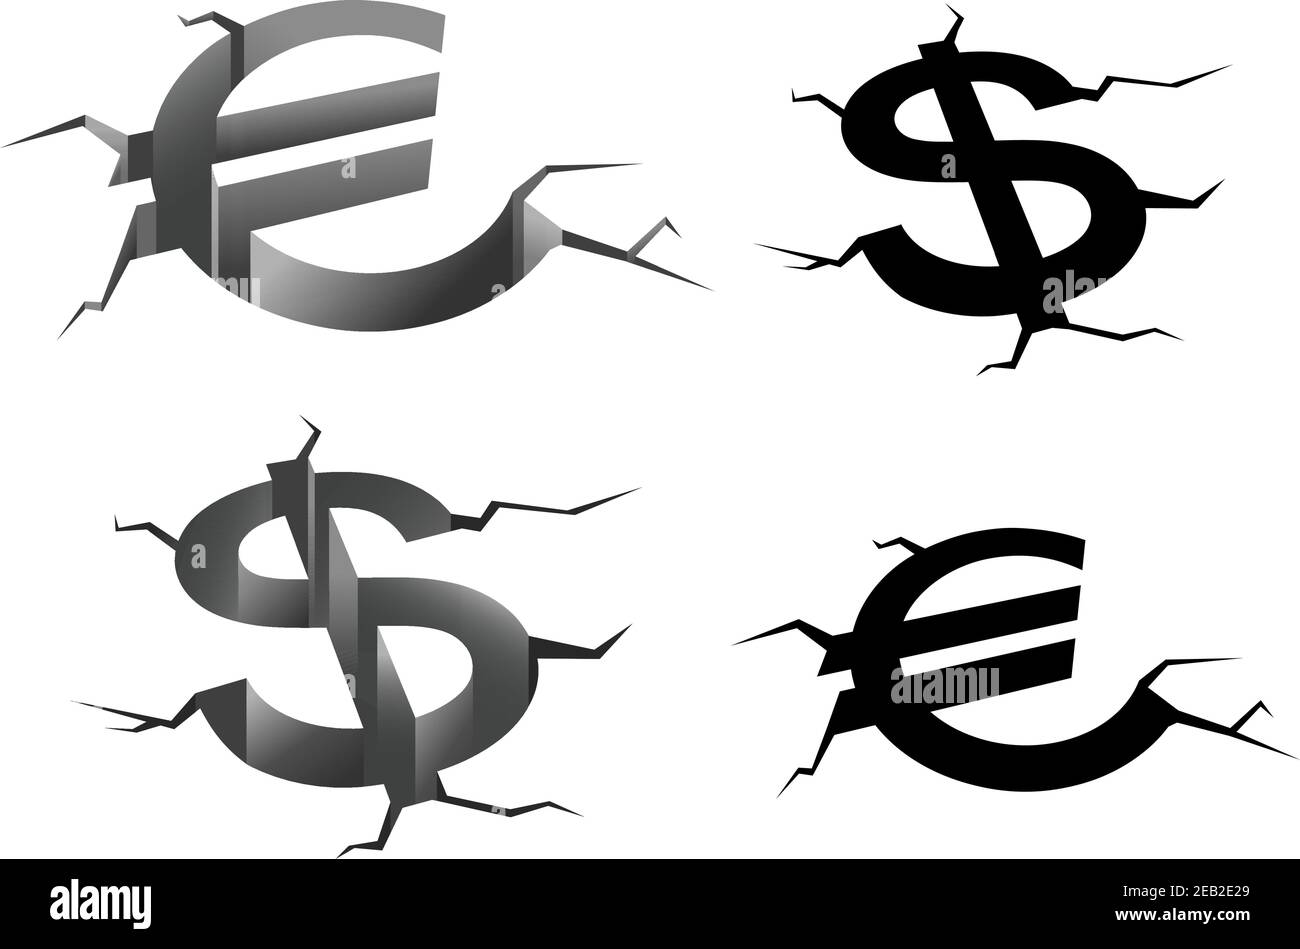 Dollar- und Euro-Geldsymbole in Erdspalten isoliert auf weißem Hintergrund, für Finanzkrise oder fallende Zinsen Konzept Stock Vektor